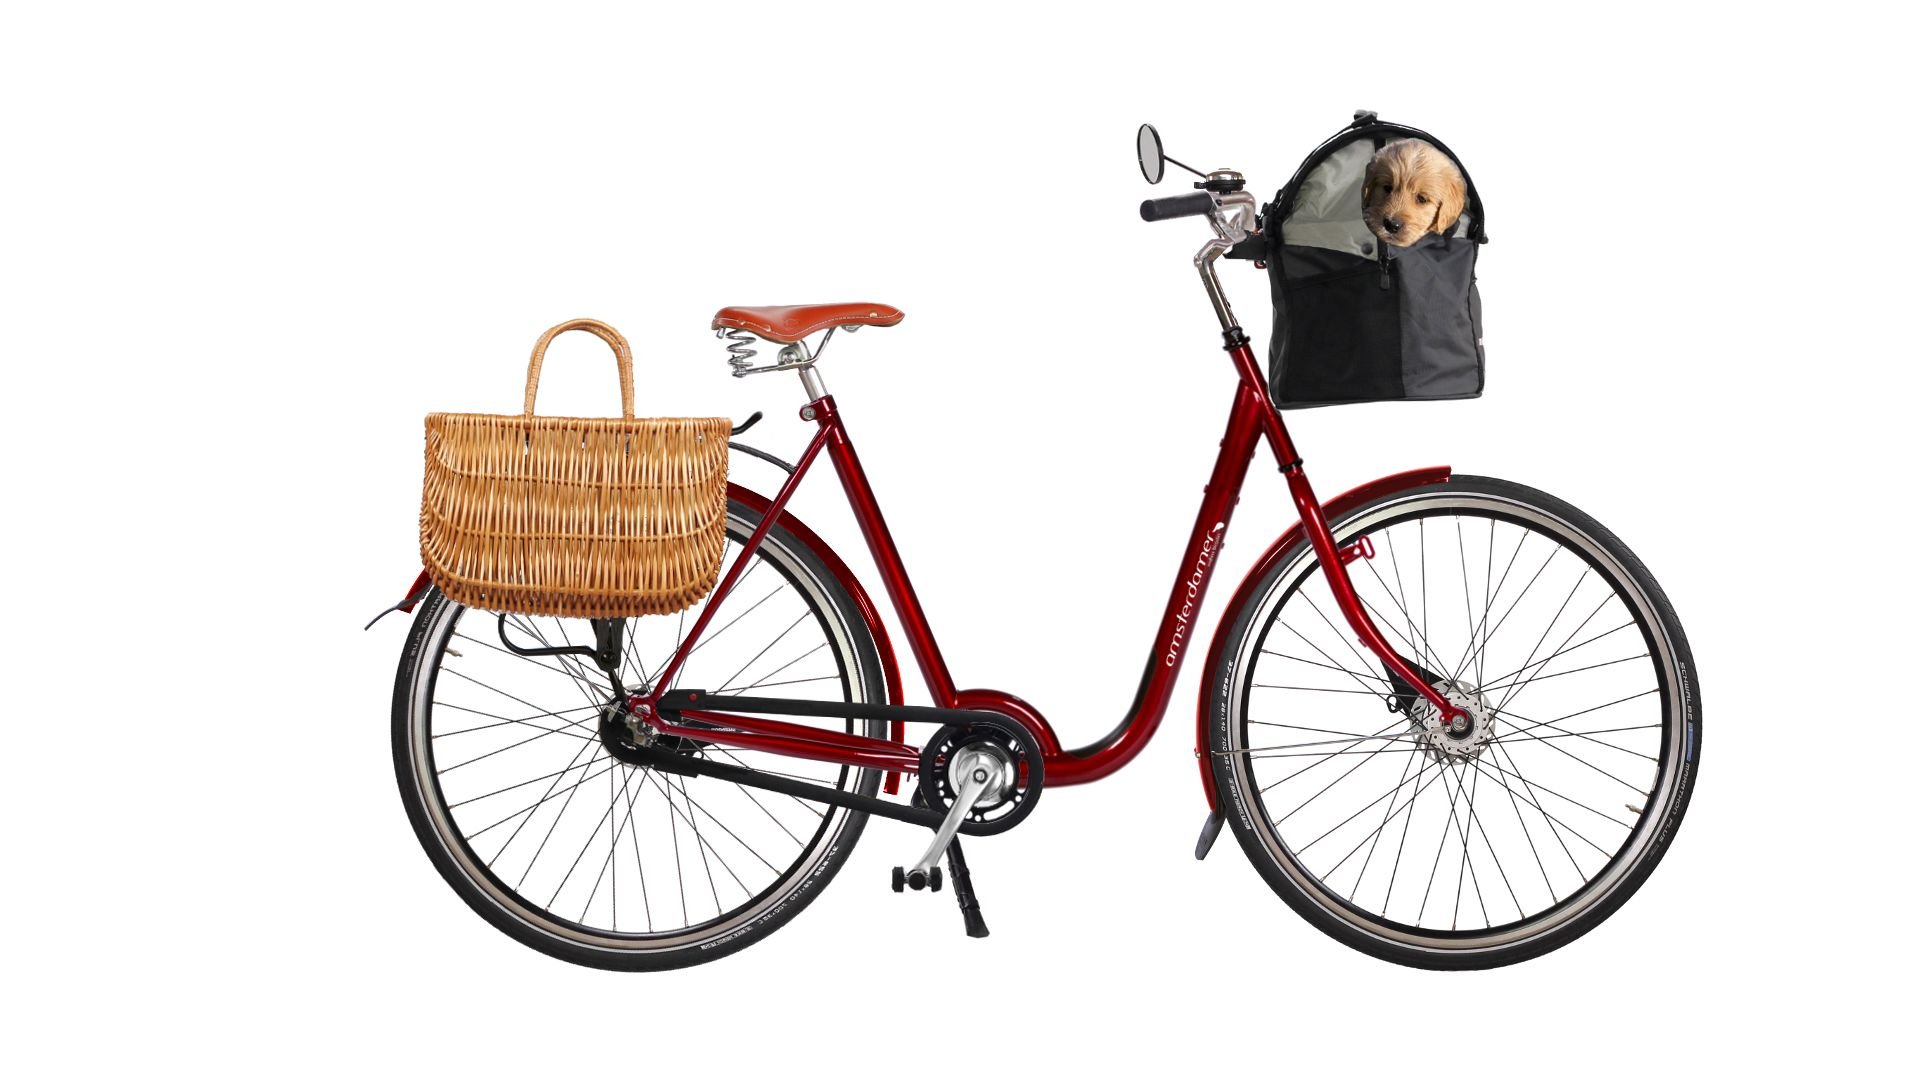 Vélo hollandais avec seuil d'enjambement bas, cadre coloris framboise